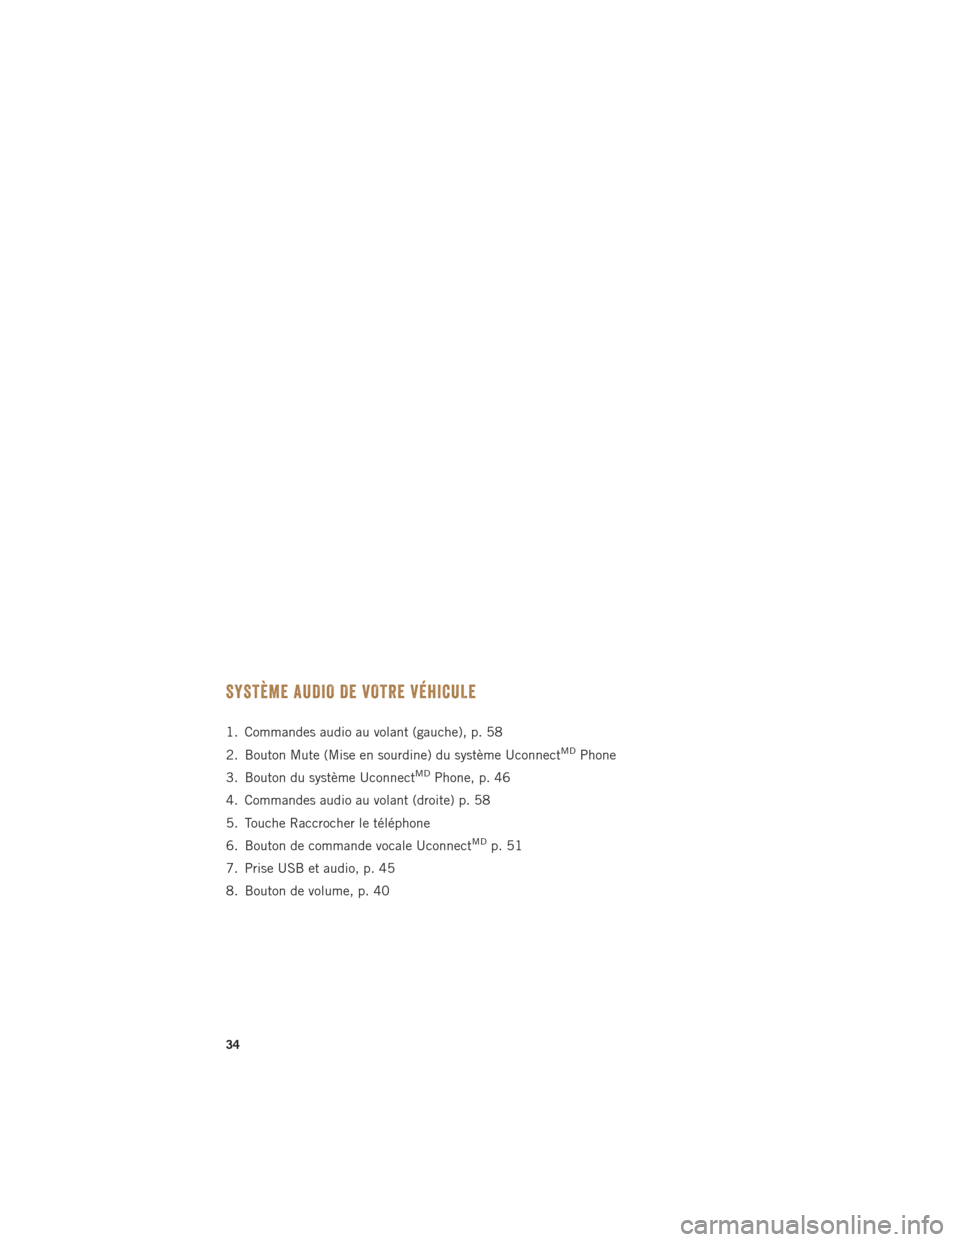 Ram ProMaster 2015  Guide dutilisateur (in French) SYSTÈME AUDIO DE VOTRE VÉHICULE
1. Commandes audio au volant (gauche), p. 58
2. Bouton Mute (Mise en sourdine) du système Uconnect
MDPhone
3. Bouton du système Uconnect
MDPhone, p. 46
4. Commandes